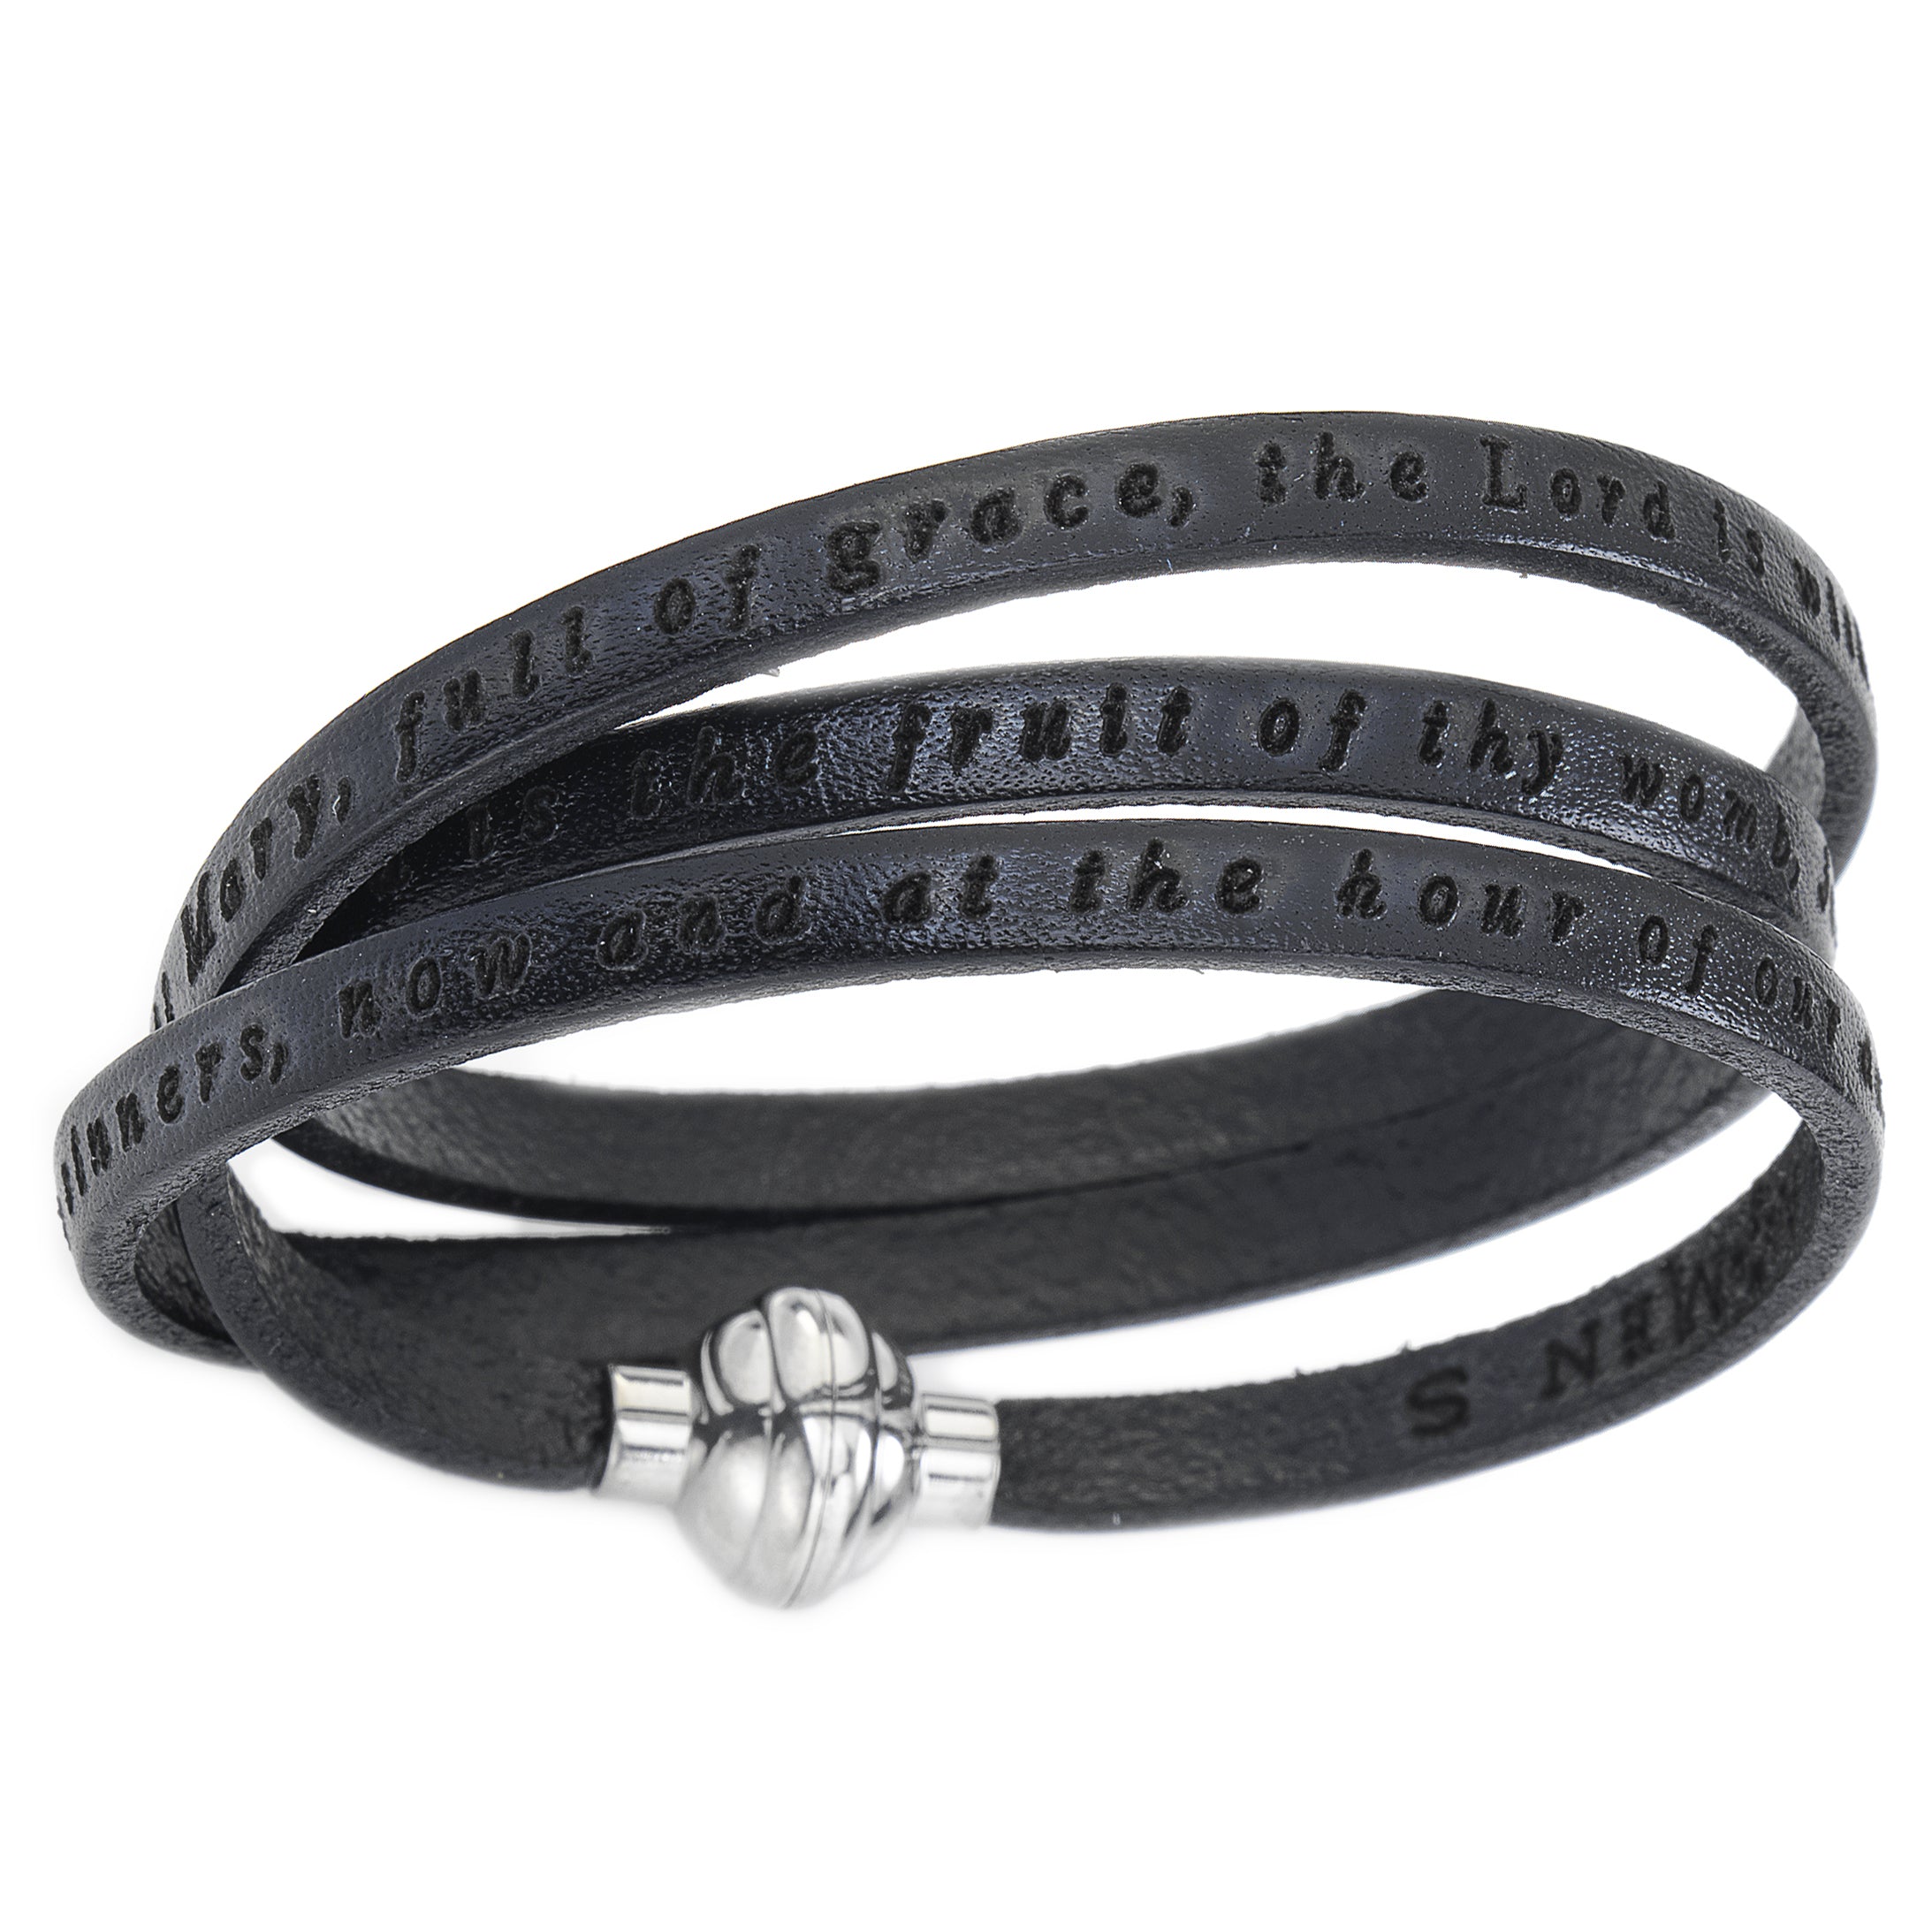 Prayer Bracelet: AMEN02/PNEN02 - AMEN Jewelry